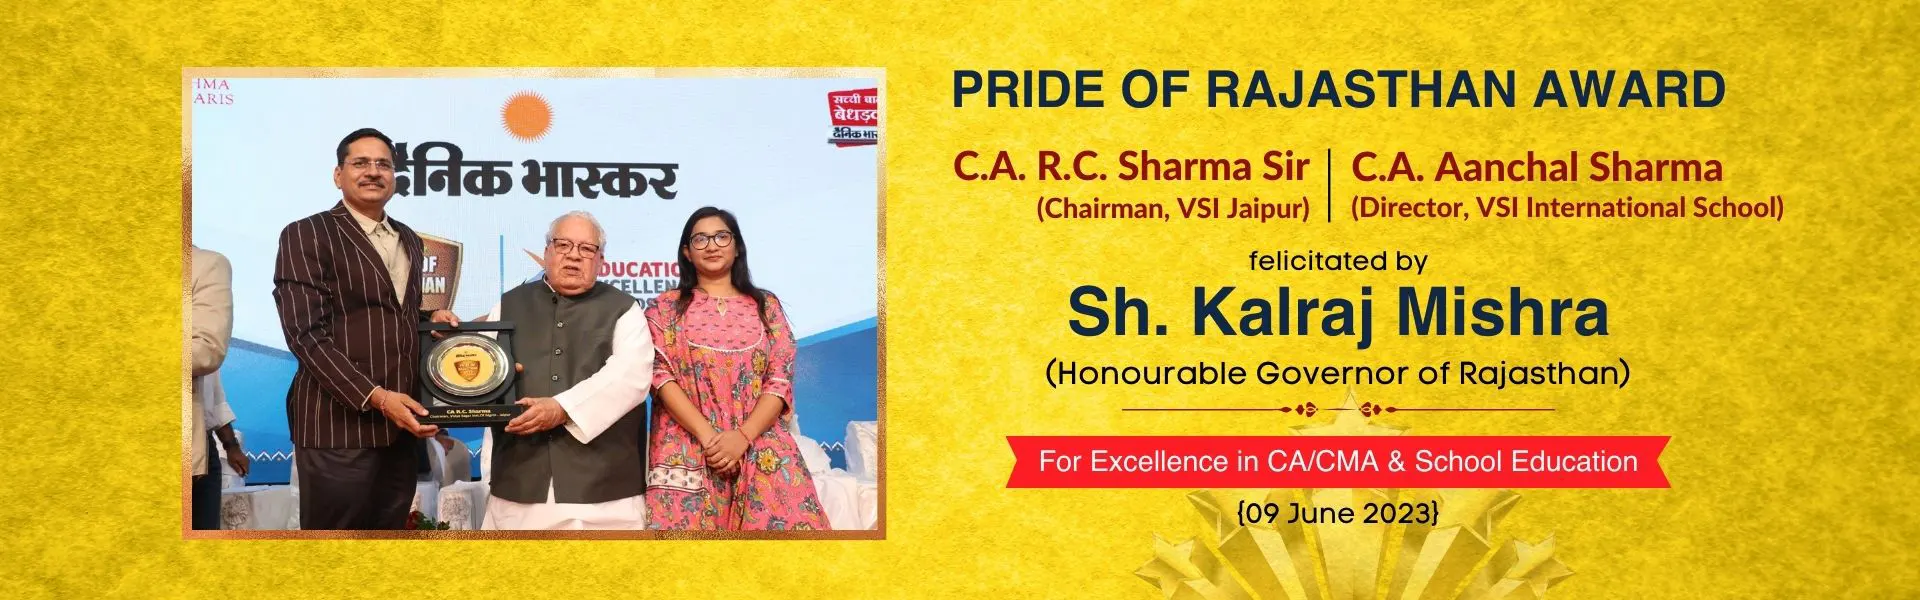 RC Sir Award - Pride of Rajasthan